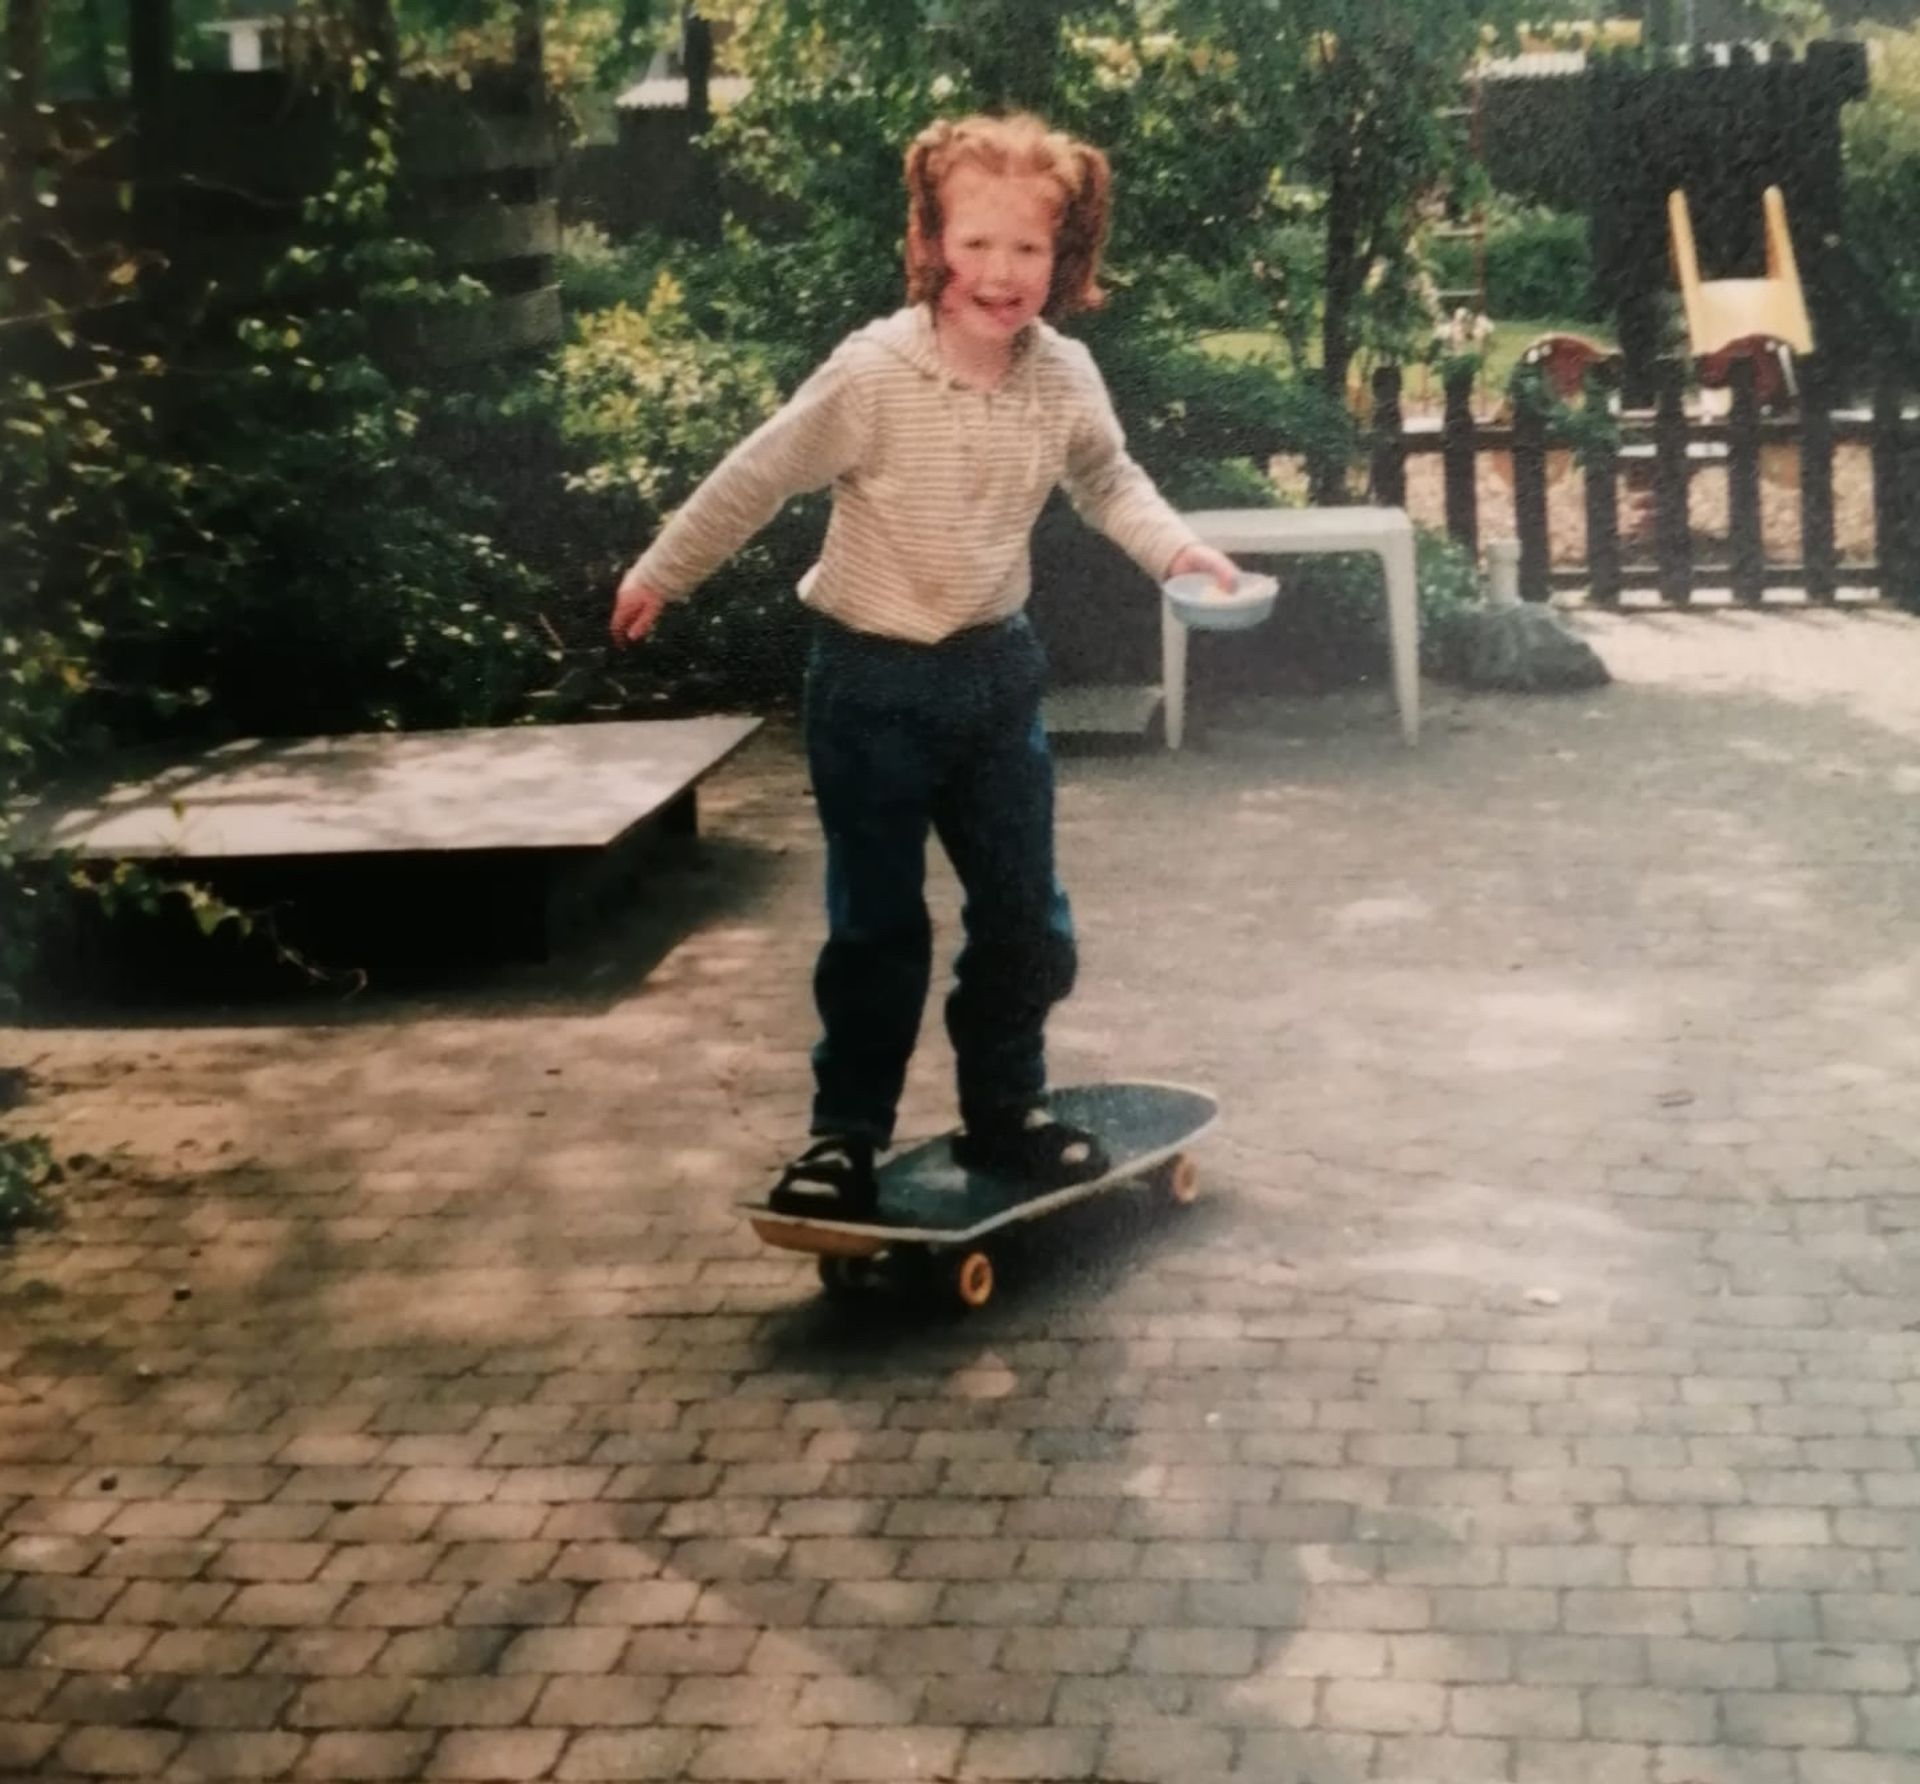 Wilke Stuij als kind op skateboard